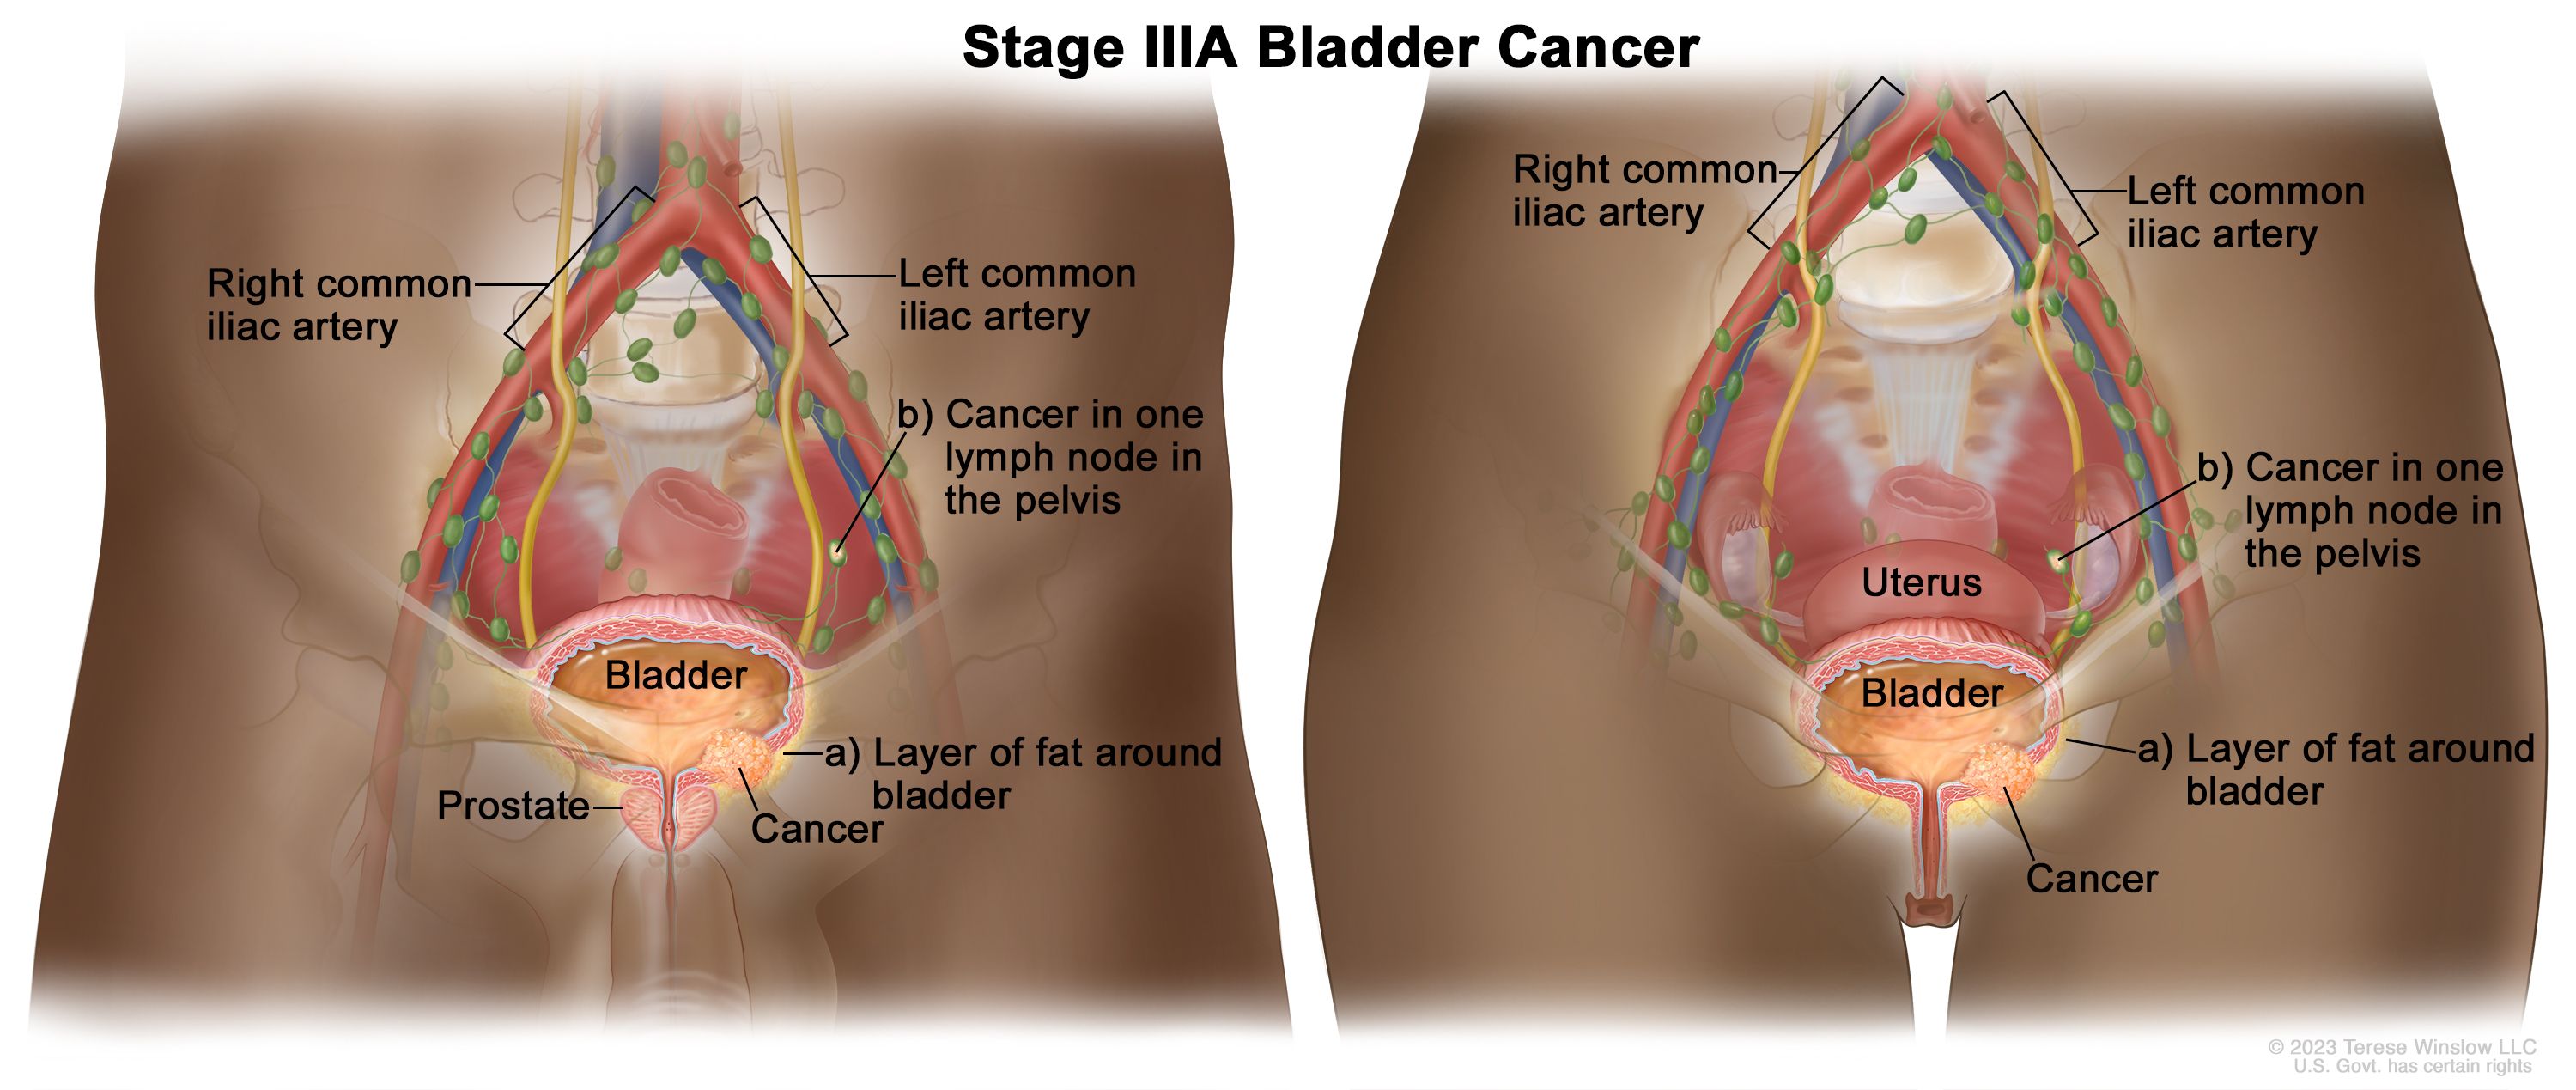 Kanser pundi kencing tahap IIIA